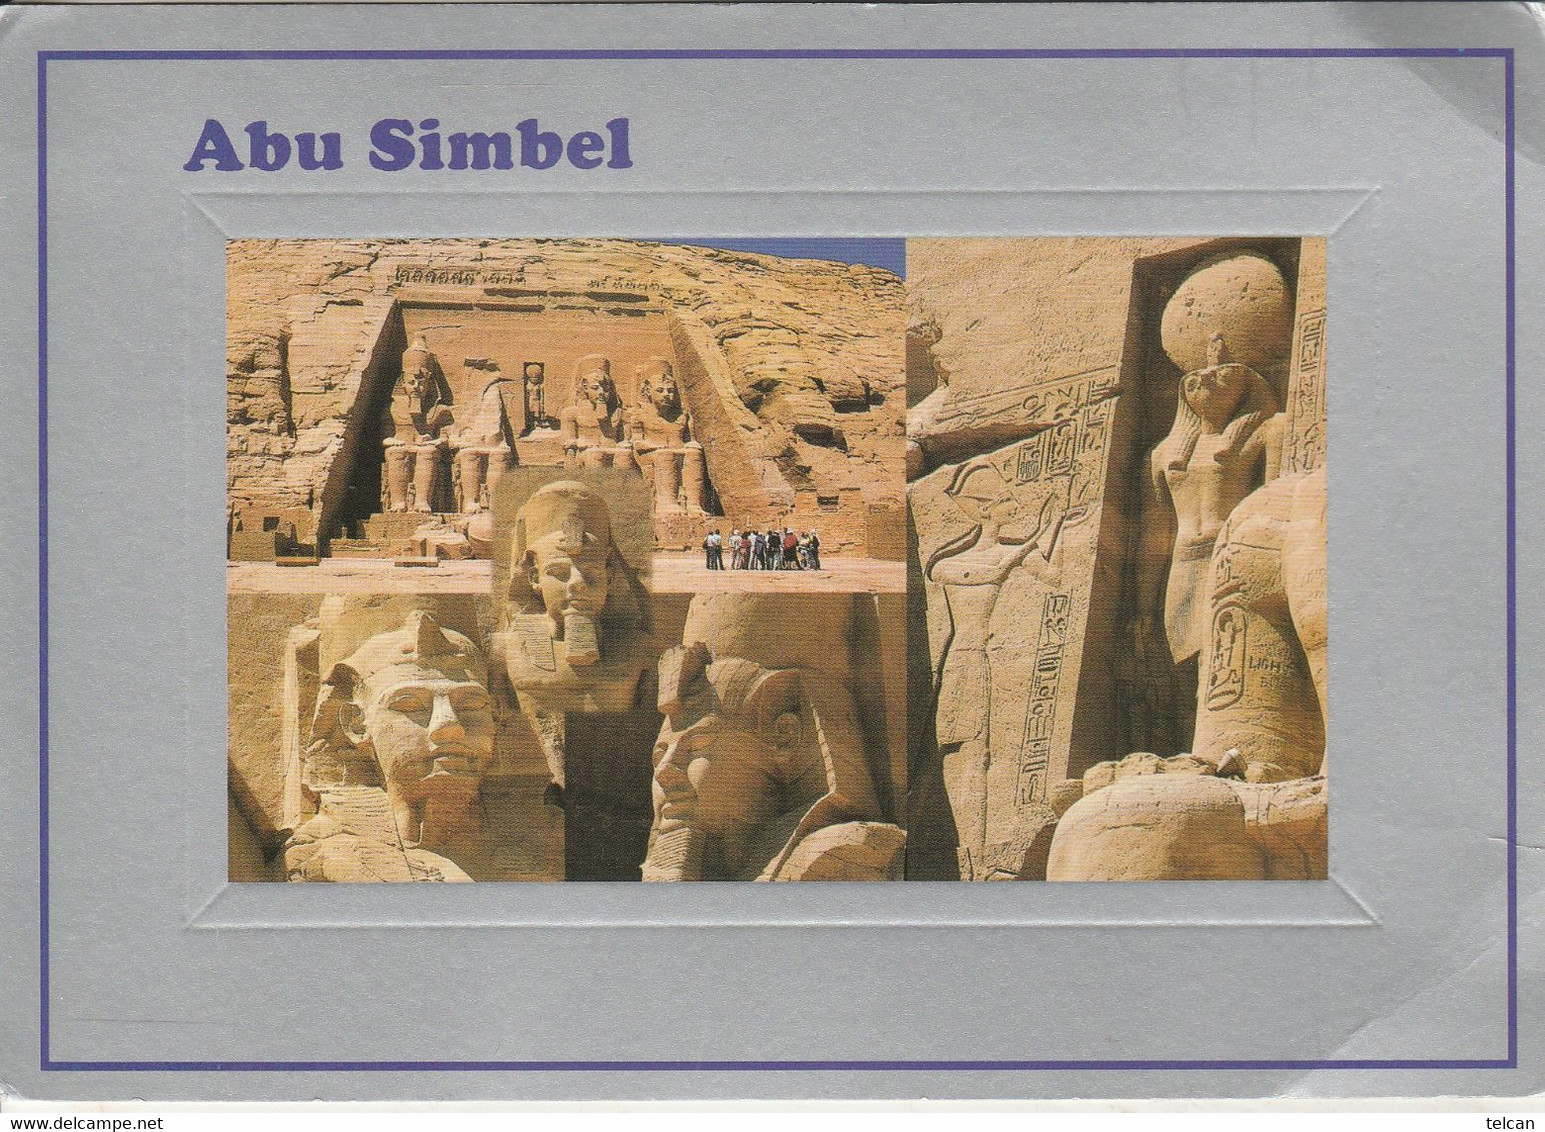 ABU SIMBEL - Abu Simbel Temples